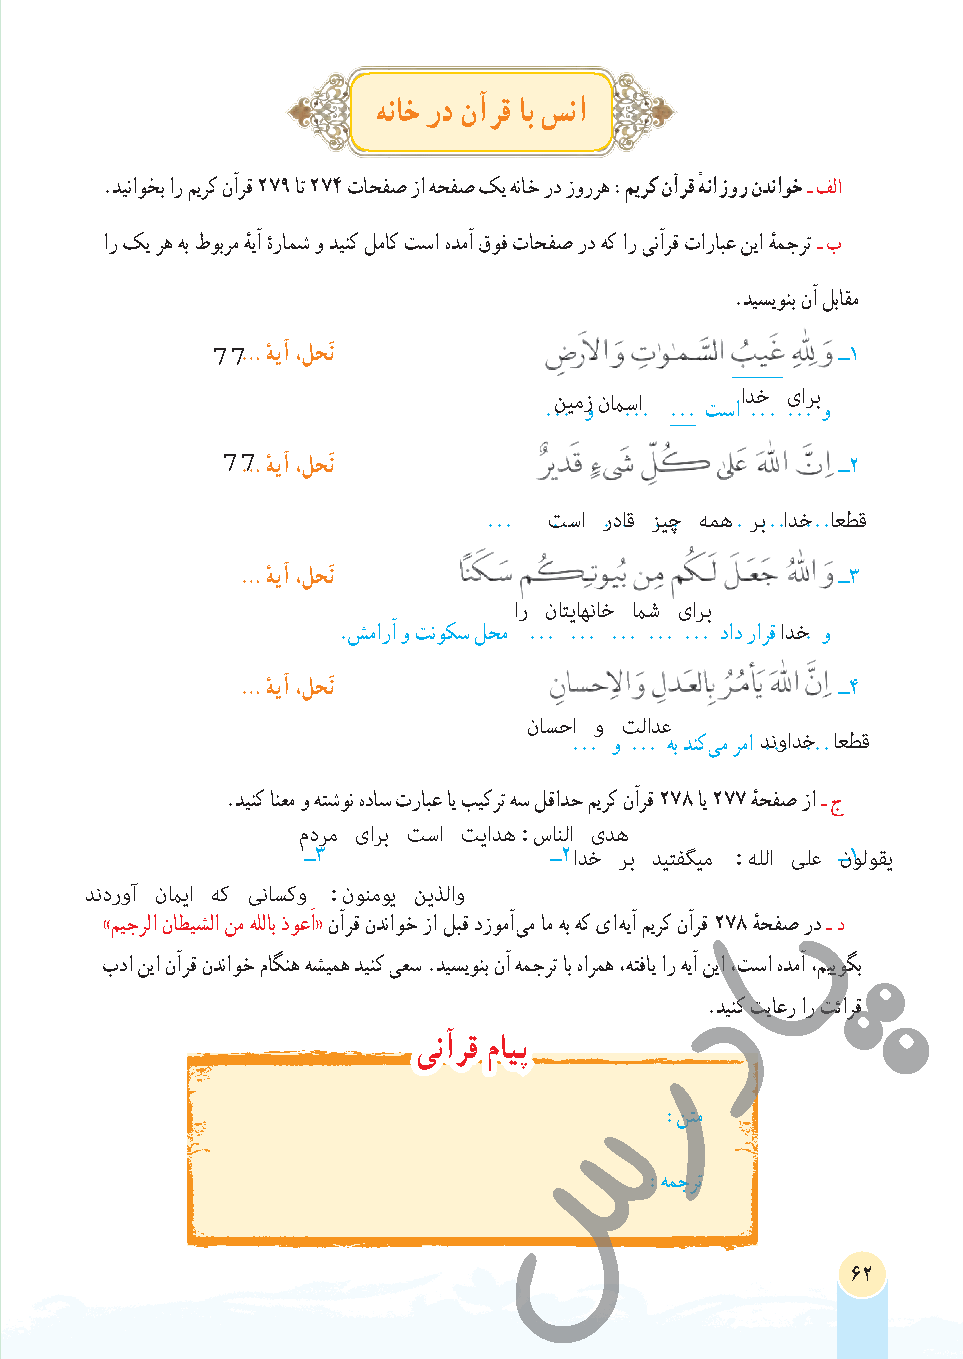 جواب انس با قرآن درس 6 قرآن هفتم - جلسه دوم